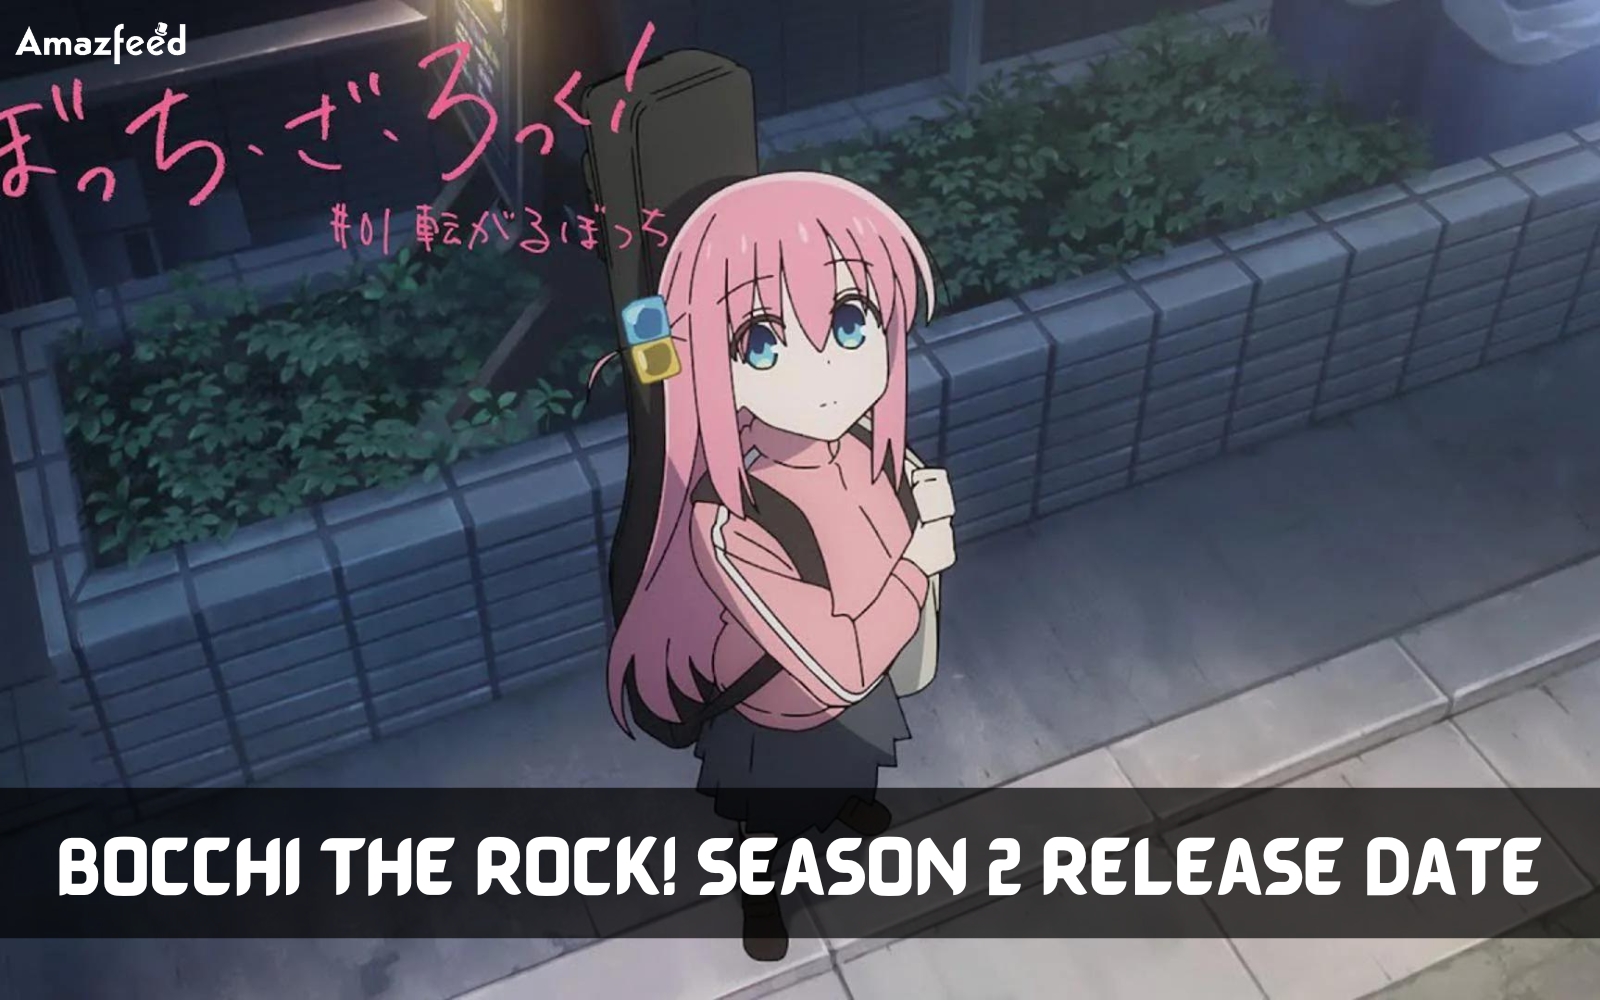 Bocchi the Rock! Season 2 Release Date, Trailer